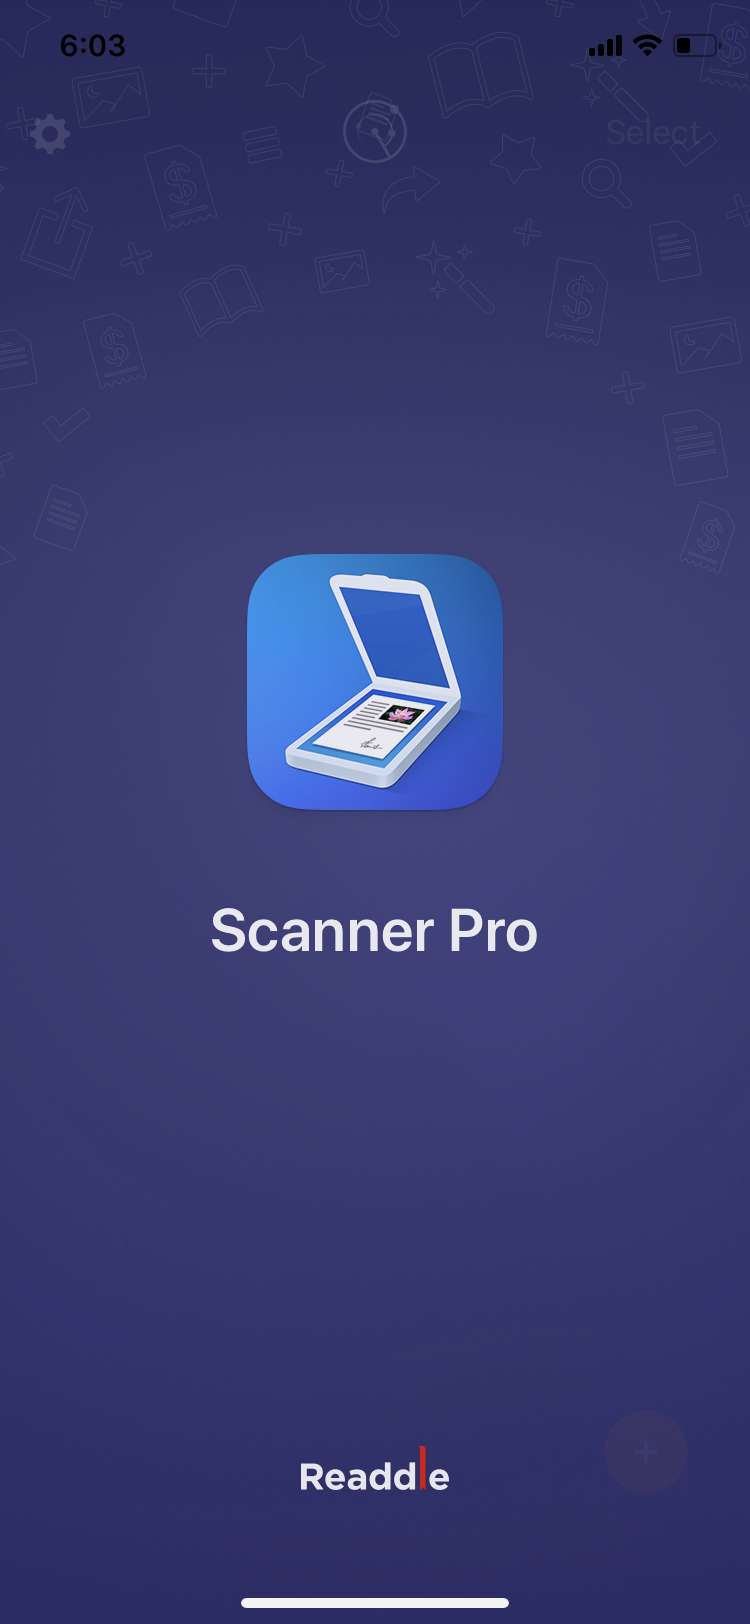 scannerPro